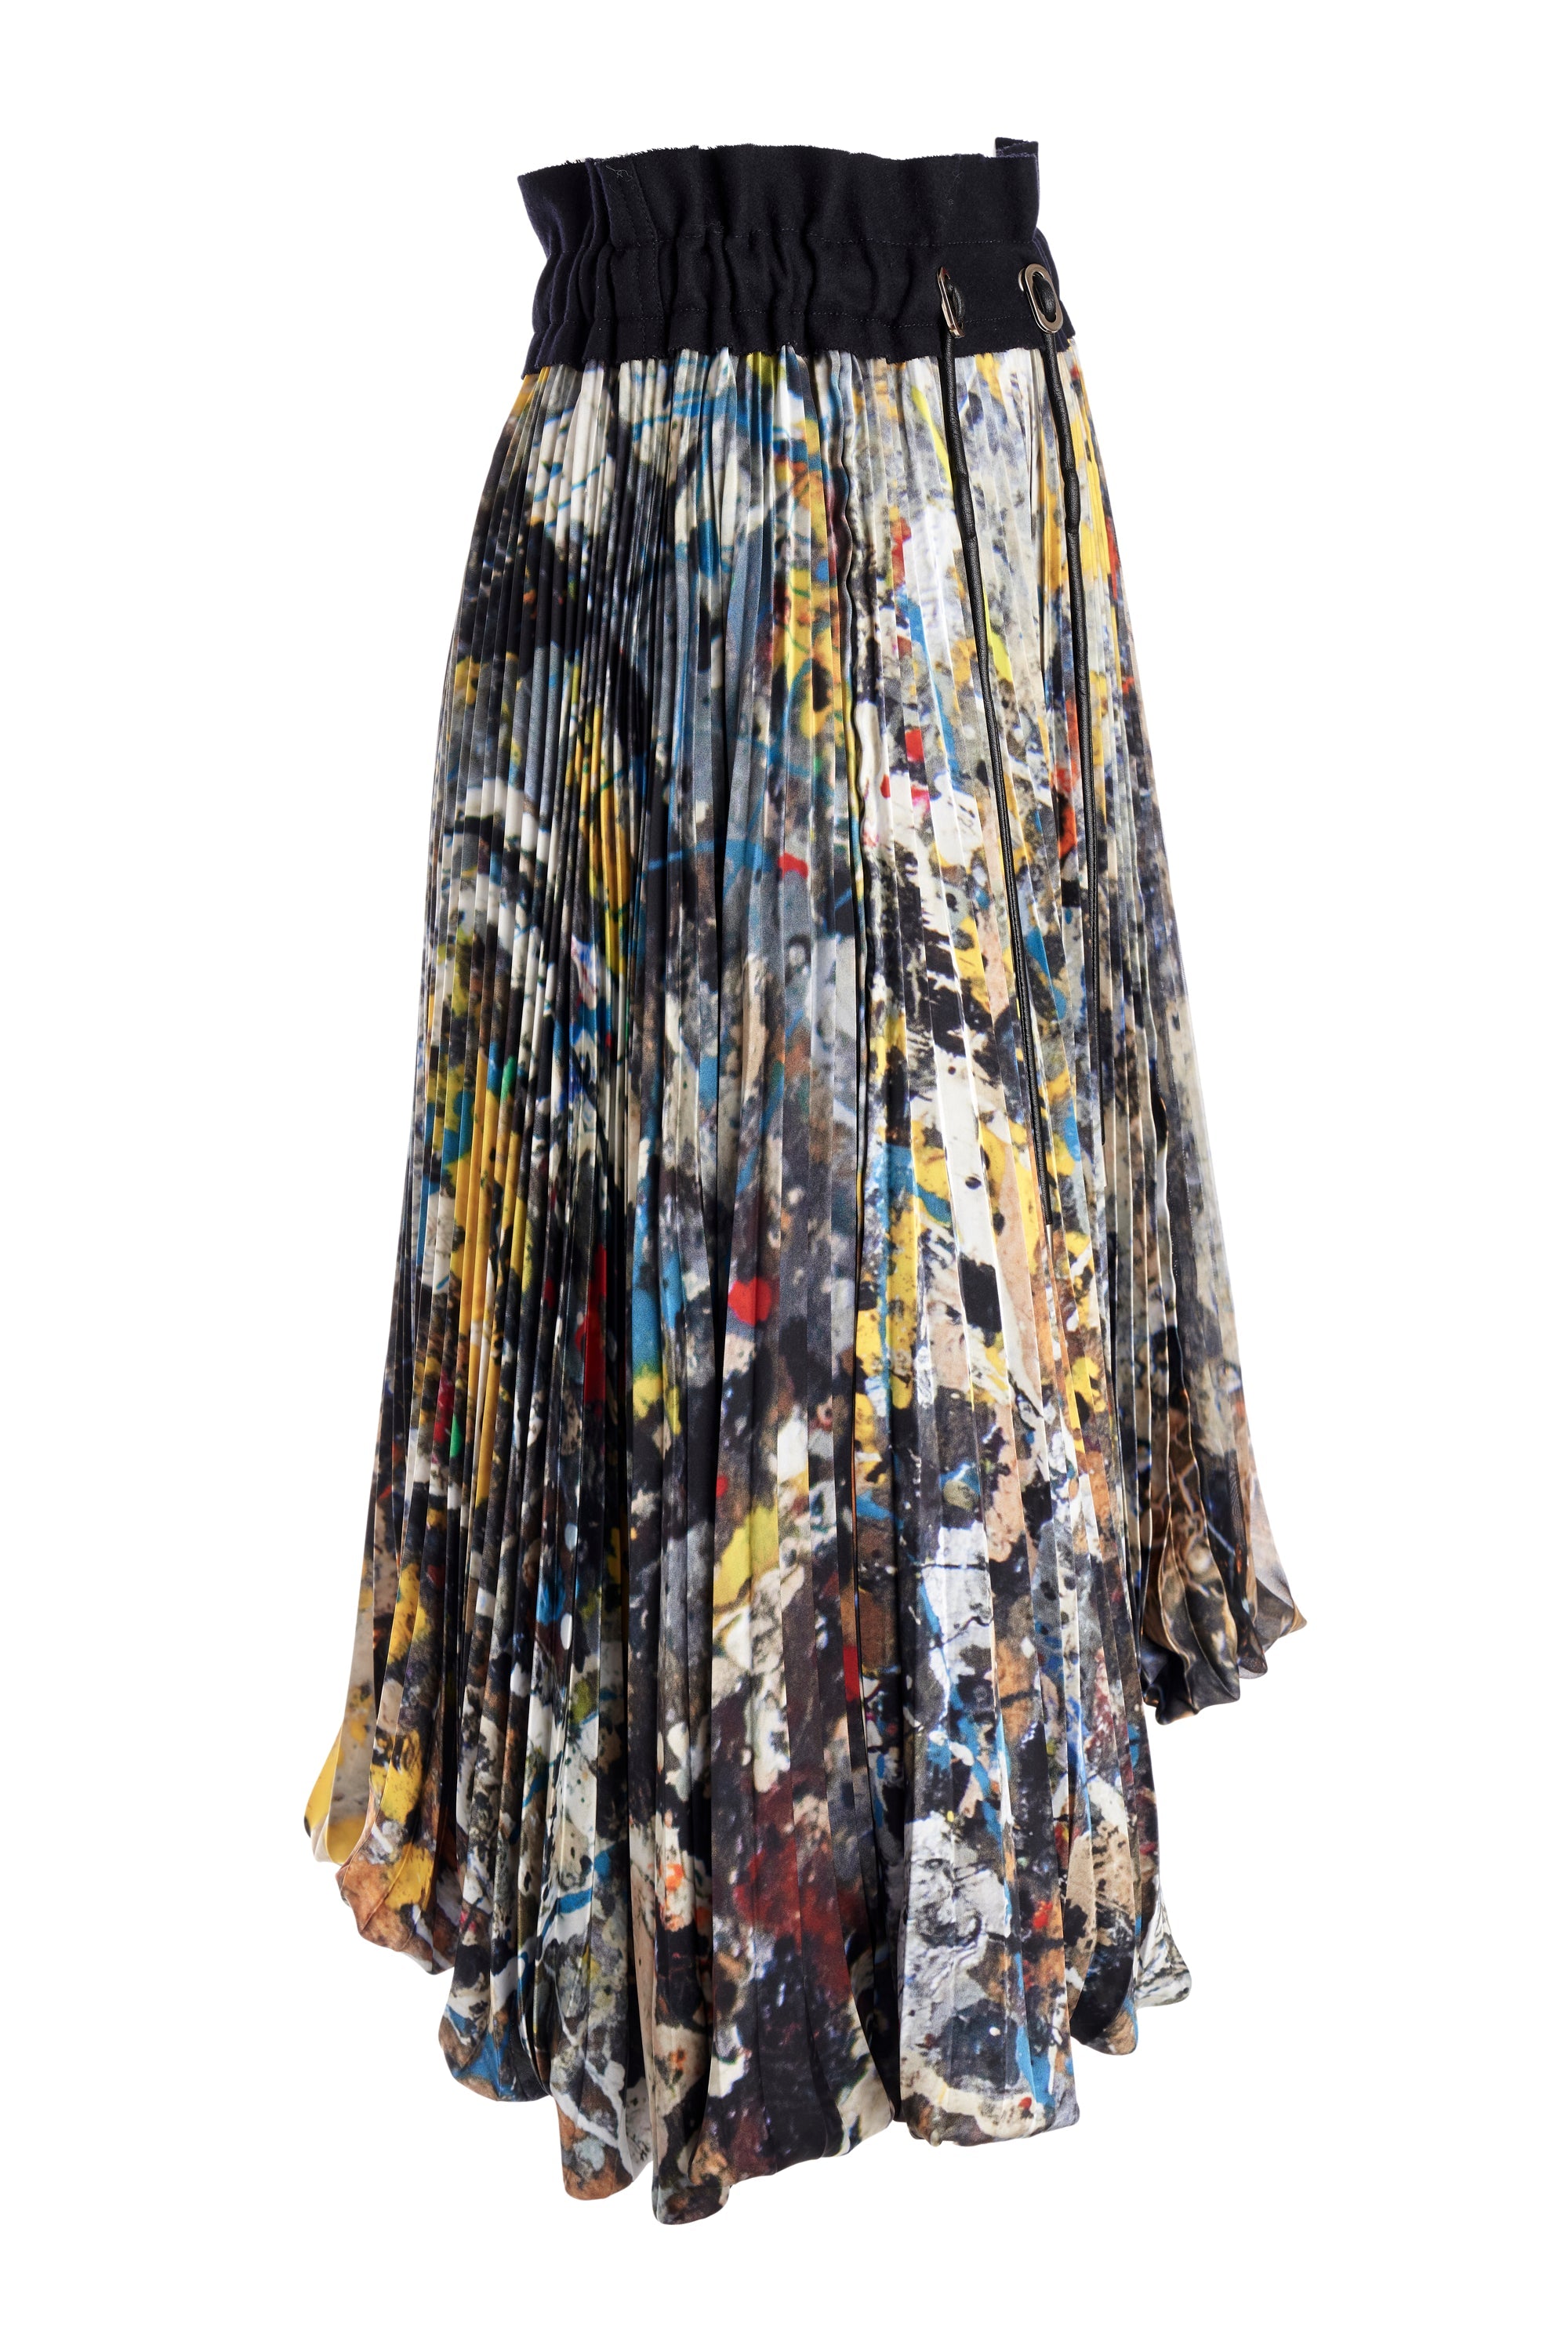 Sacai Pleated Jackson Pollock Skirt